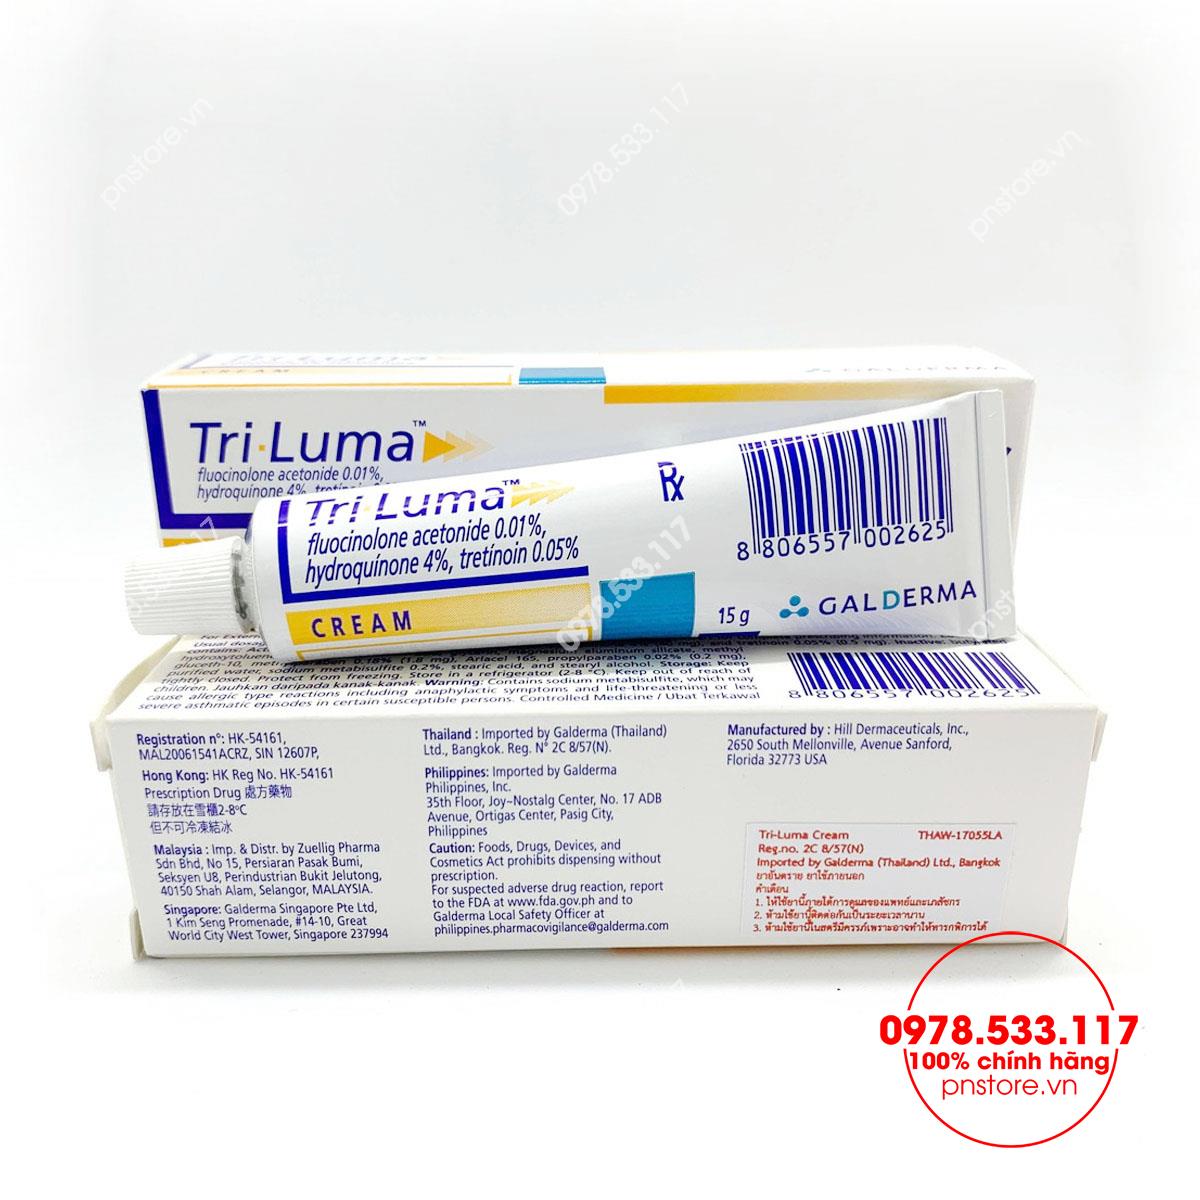 Kem Galderma Tri Luma Cream 15g trị thâm nám đốm nâu chính hãng (Mỹ - USA) - PN99892